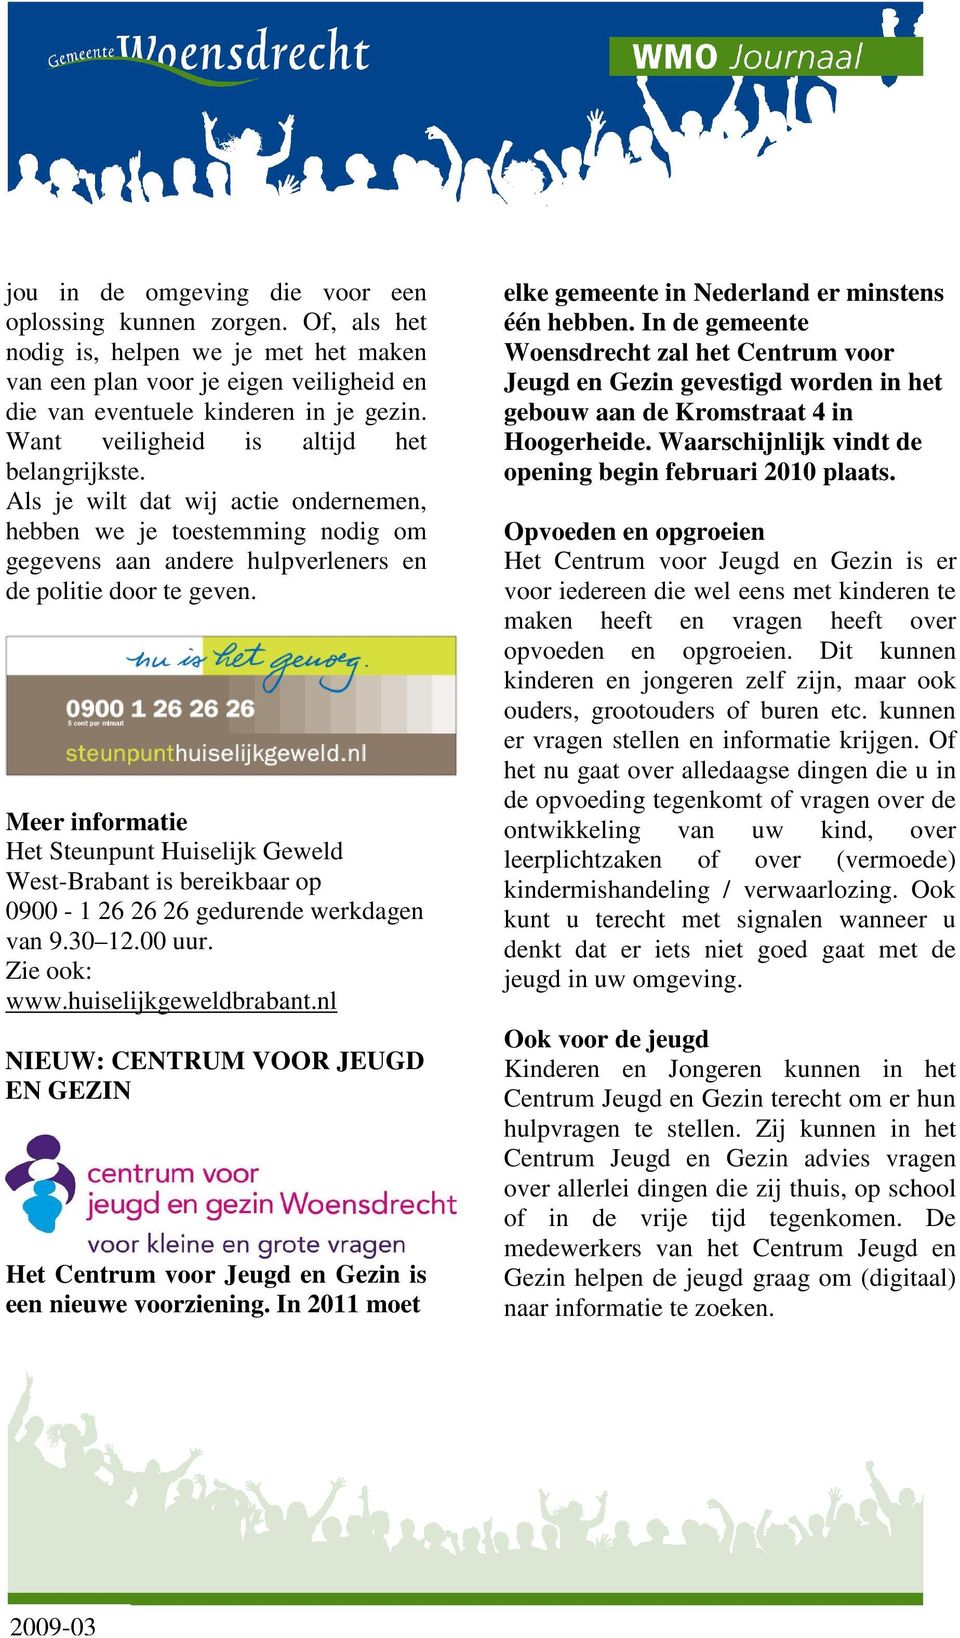 Meer informatie Het Steunpunt Huiselijk Geweld West-Brabant is bereikbaar op 0900-1 26 26 26 gedurende werkdagen van 9.30 12.00 uur. Zie ook: www.huiselijkgeweldbrabant.